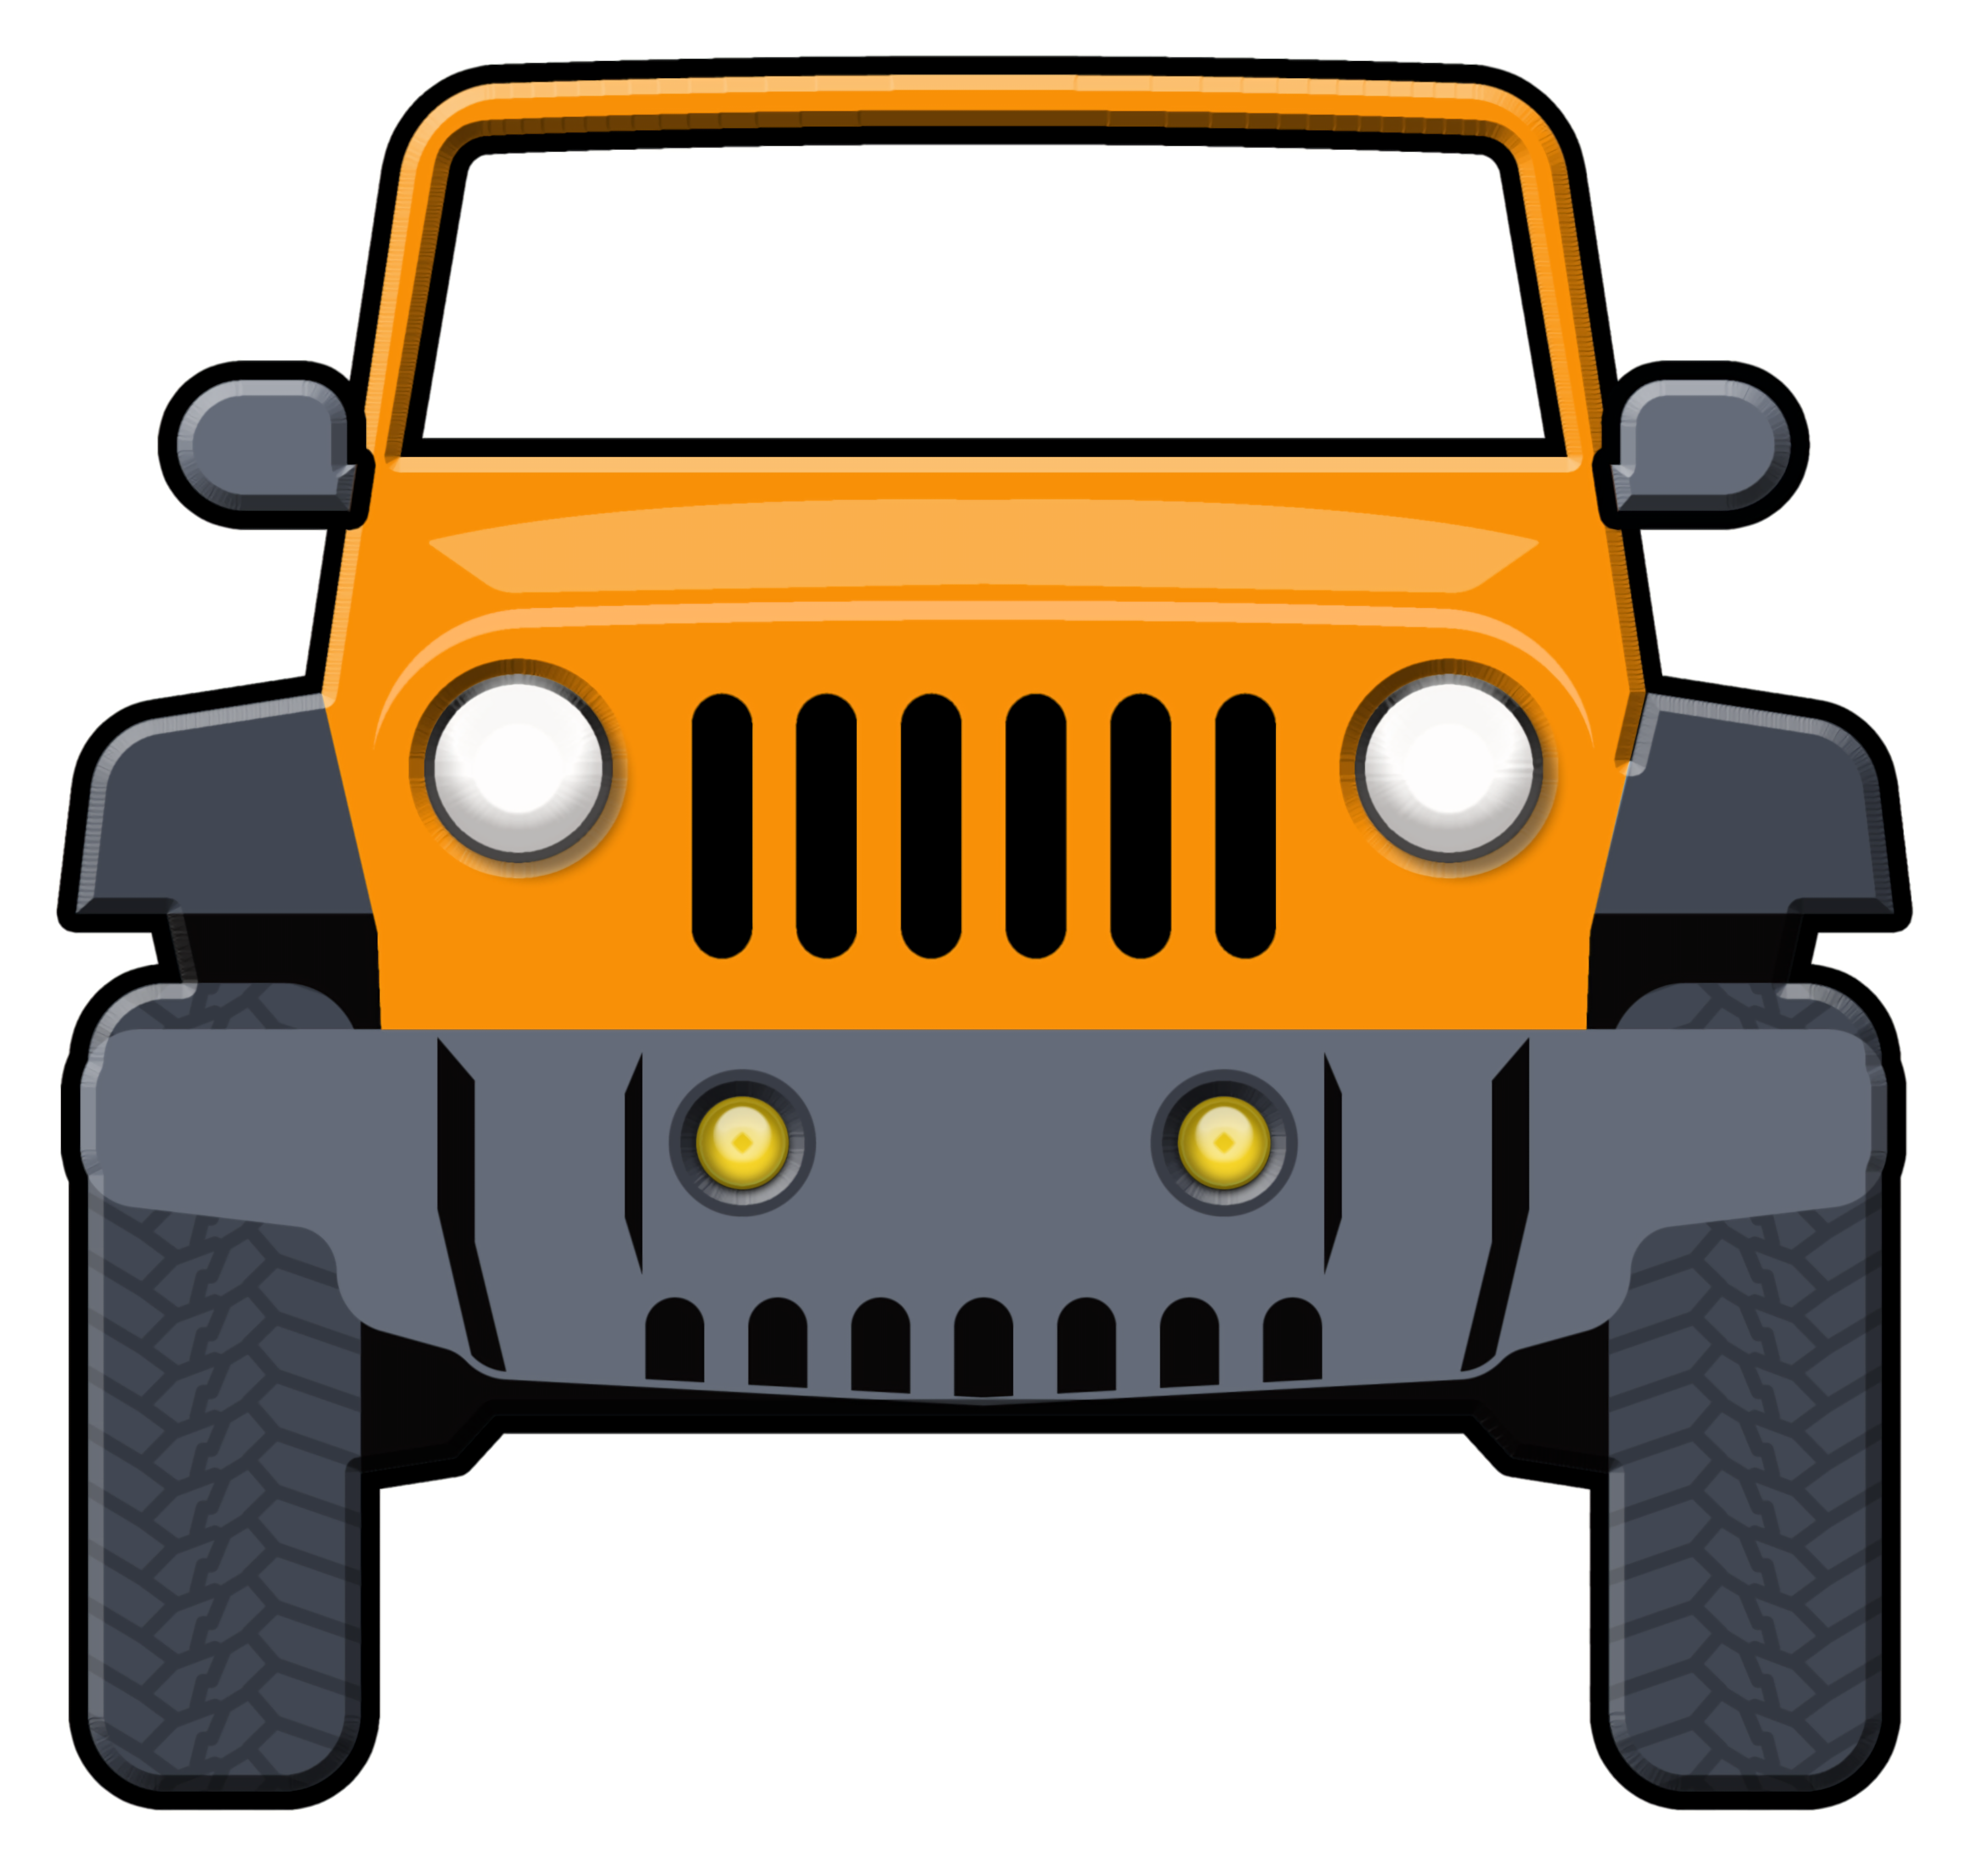 Juegos de Jeep